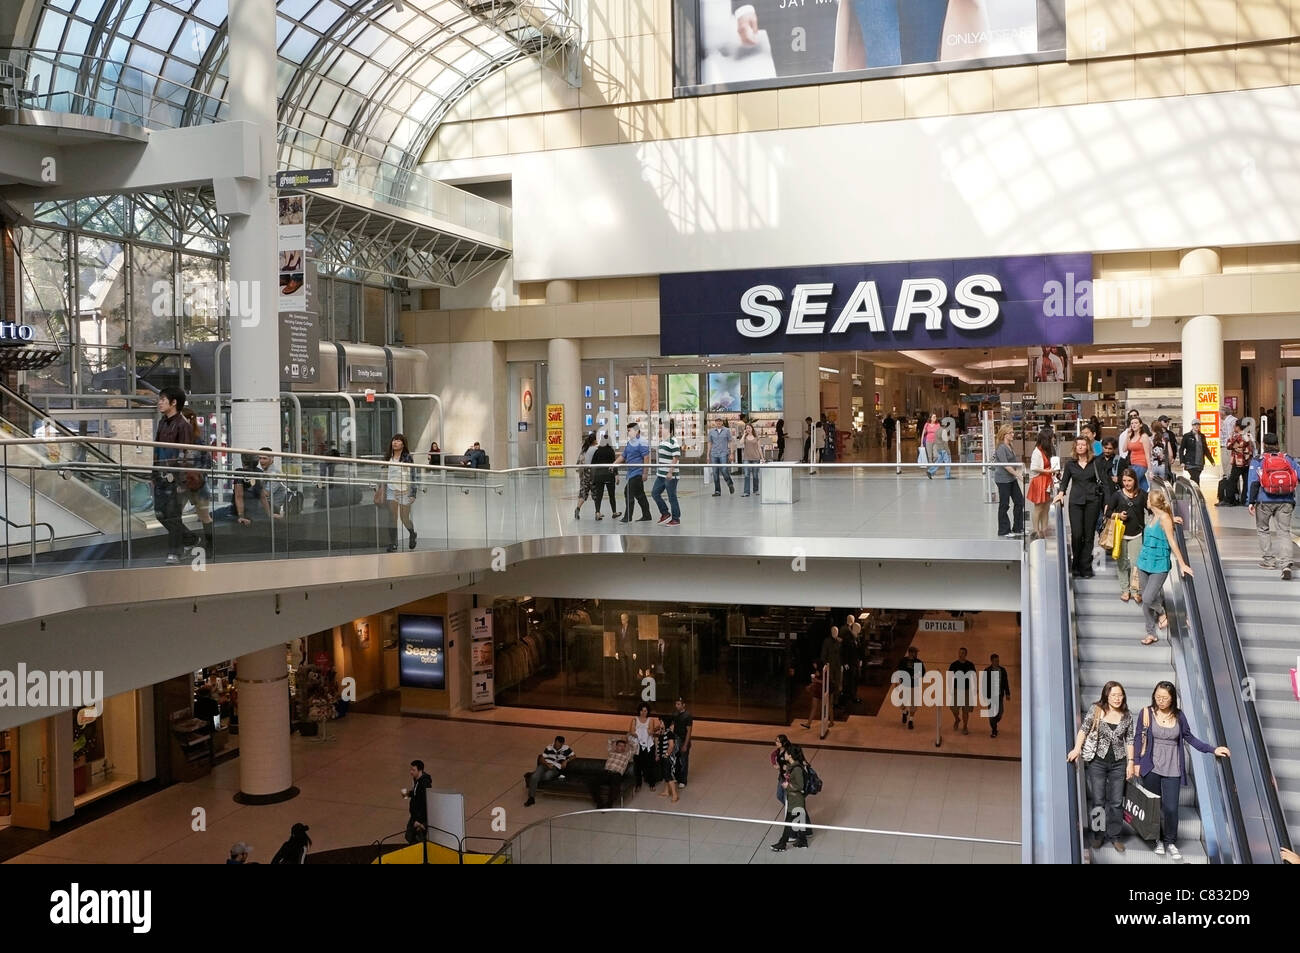 Les gens sur les escaliers mécaniques dans un centre commercial, et l'entrée du magasin Sears, le Centre Eaton de Toronto Banque D'Images